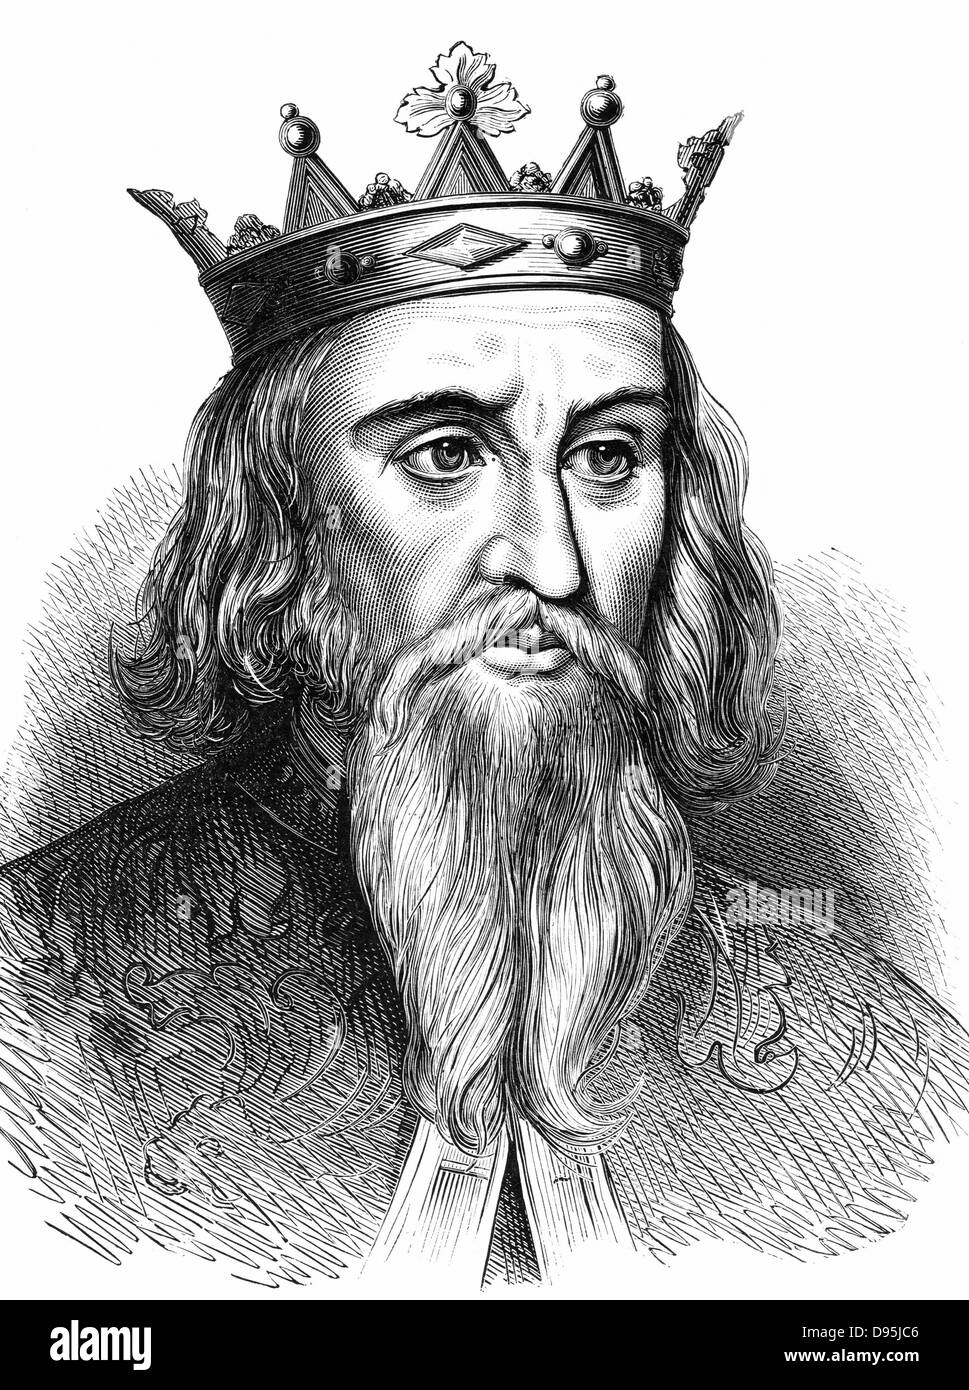 Henry ich (1068-1135) König von England von 1100; jüngster Sohn von Wilhelm i., der Eroberer. Holzstich-1900 Stockfoto